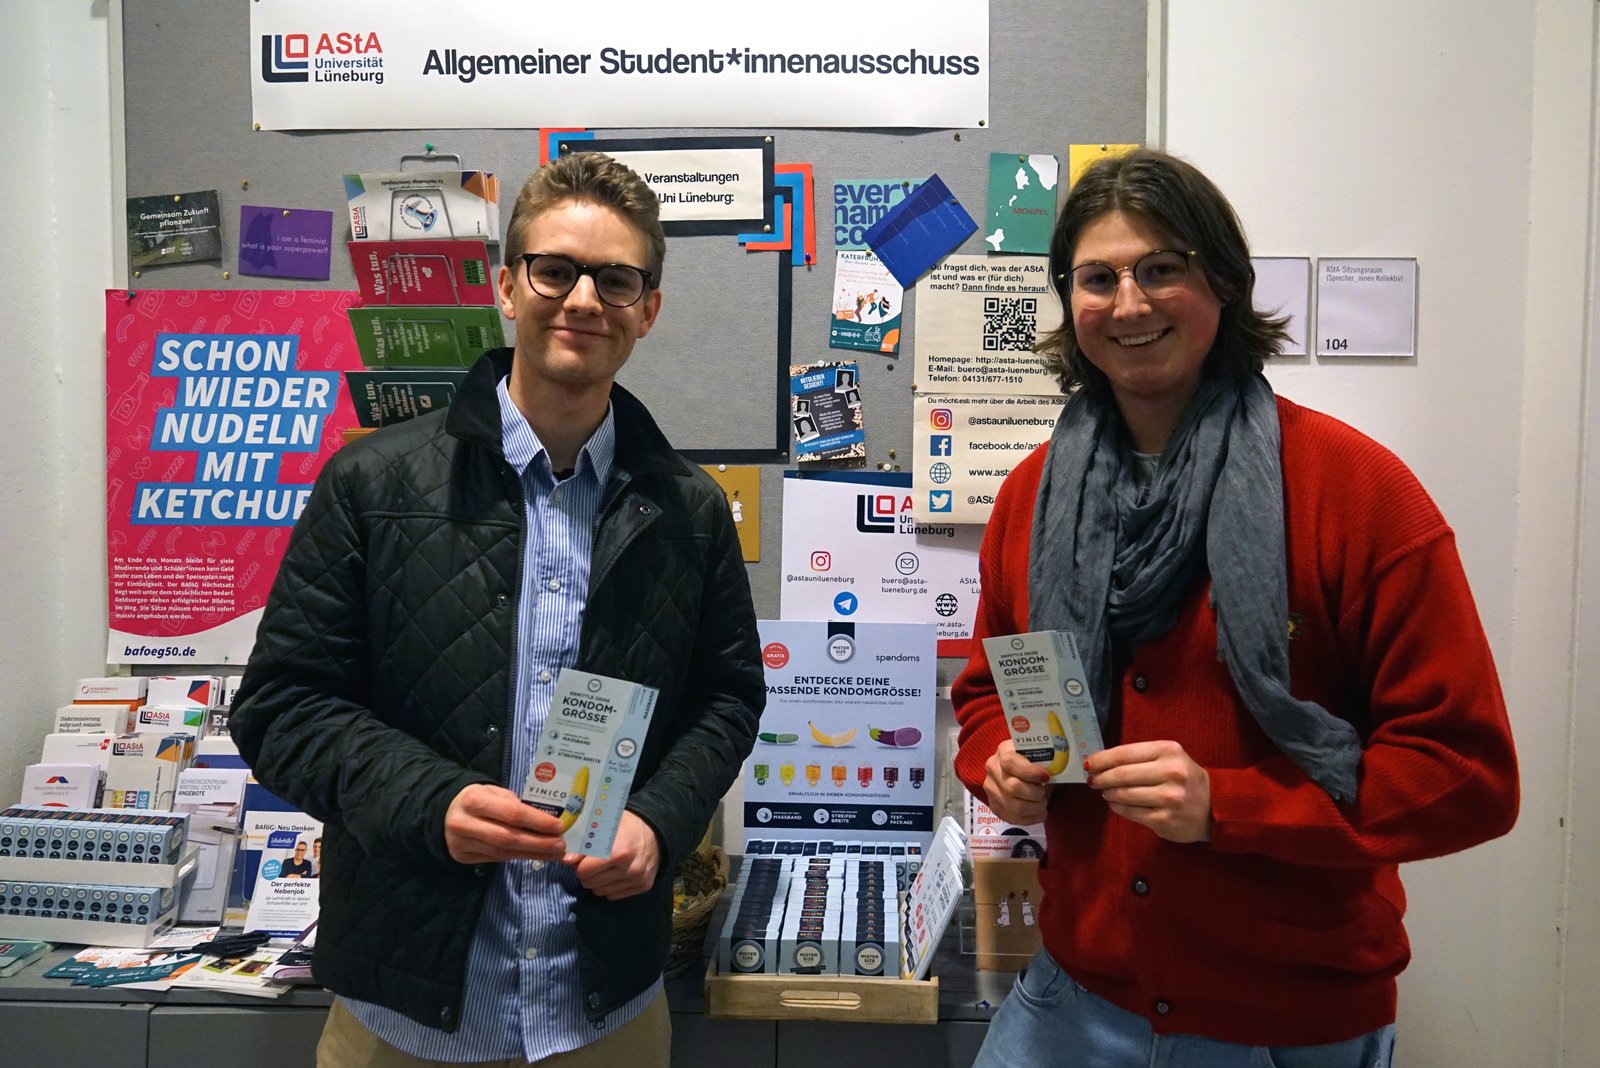 Luis från Spondoms (till vänster) öppnar den kostnadsfria kondomautomaten tillsammans med Max från AStA vid Leuphana University Lüneburg (till höger).